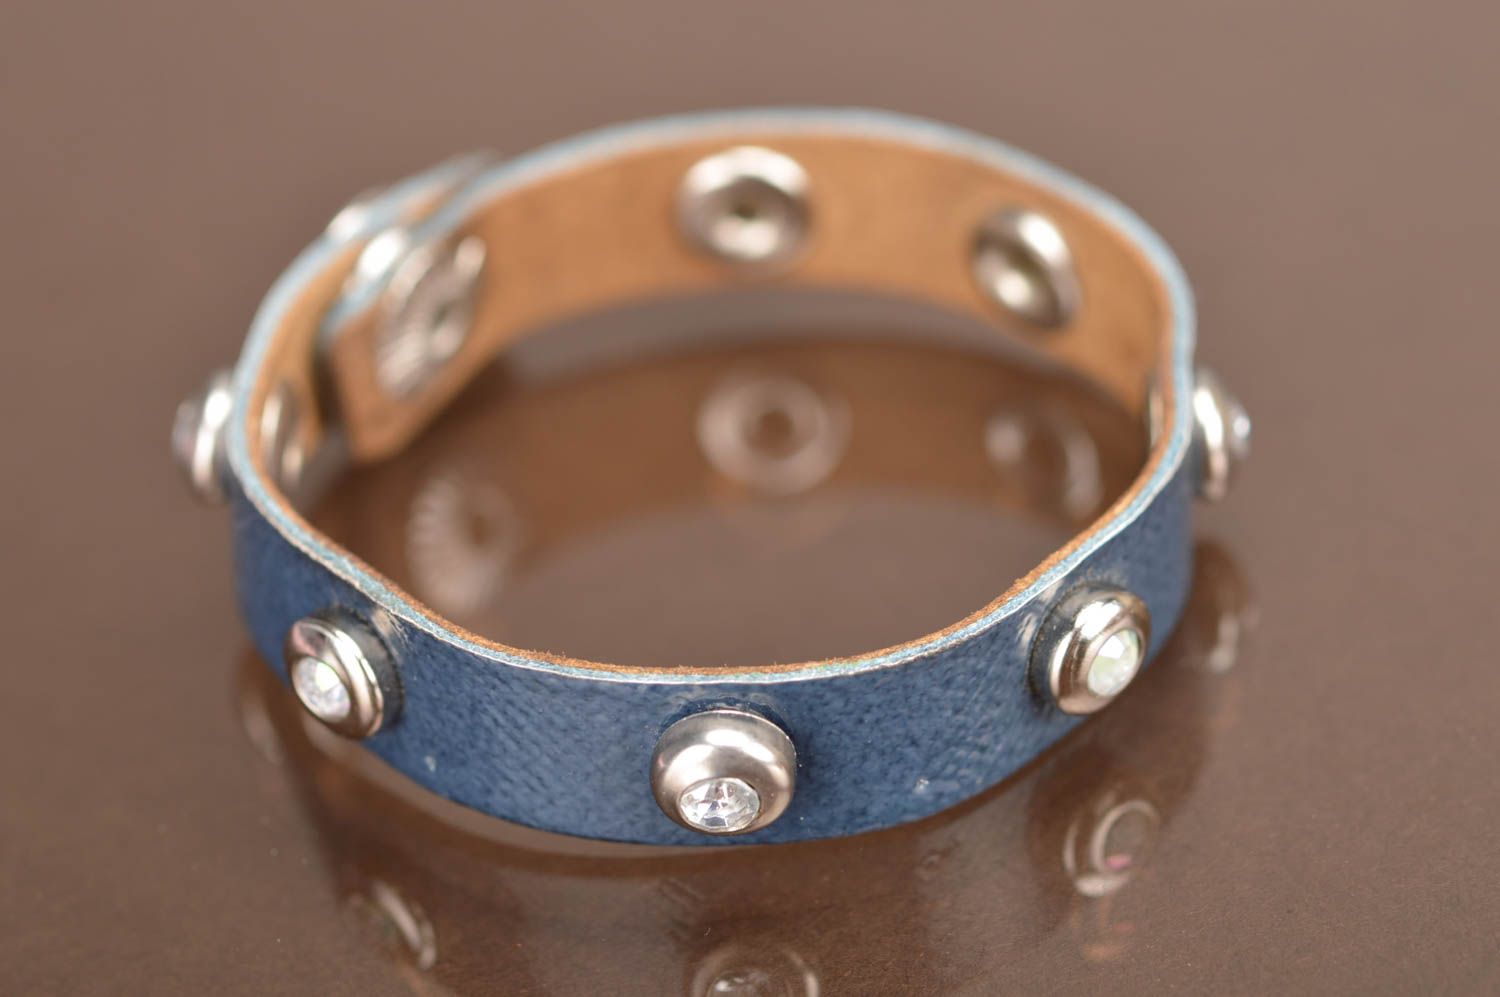 Blaues Armband aus Leder mit Nieten schön dünn Handarbeit stilvoll modisch toll foto 2